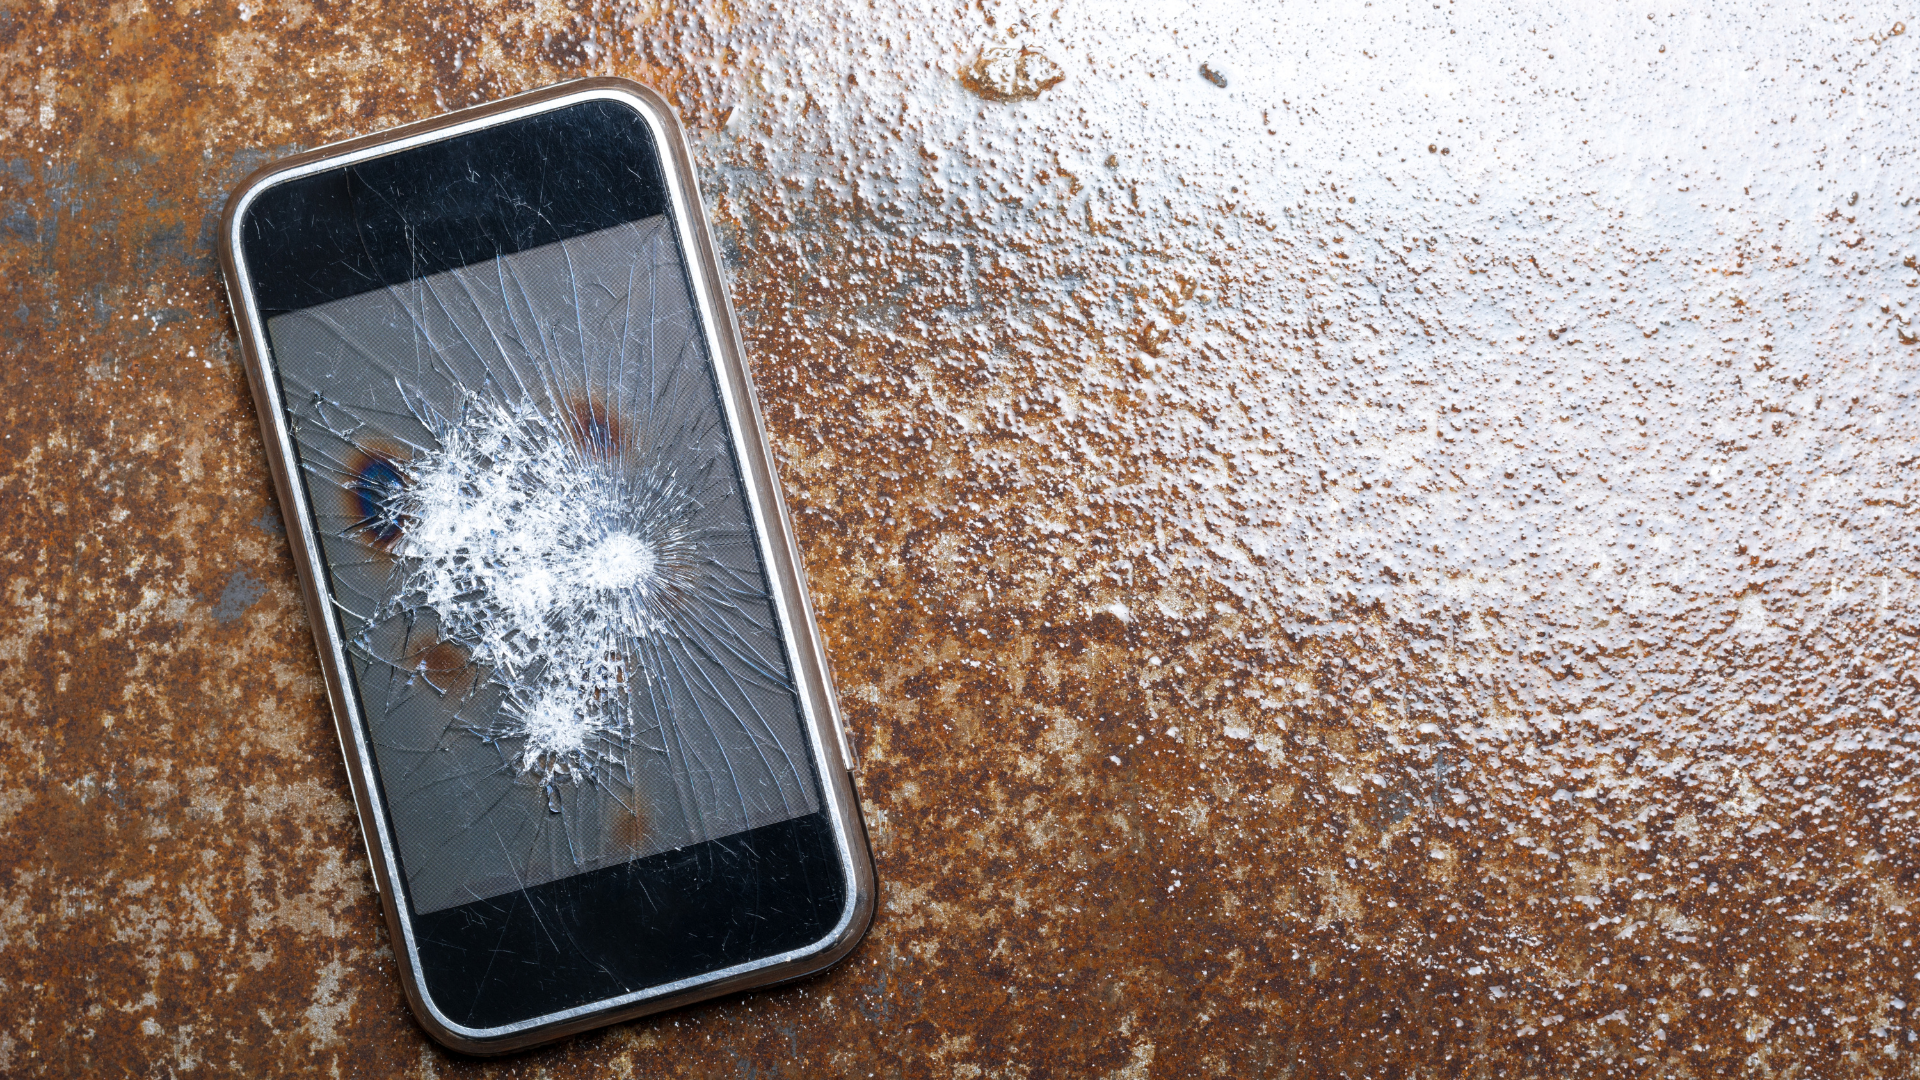 สมาร์ทโฟน Huawei หน้าจอแตก - ร้านซ่อมโทรศัพท์มือถือ ออนไลน์ - ร้านซ่อมโทรศัพท์มือถือ ออนไลน์